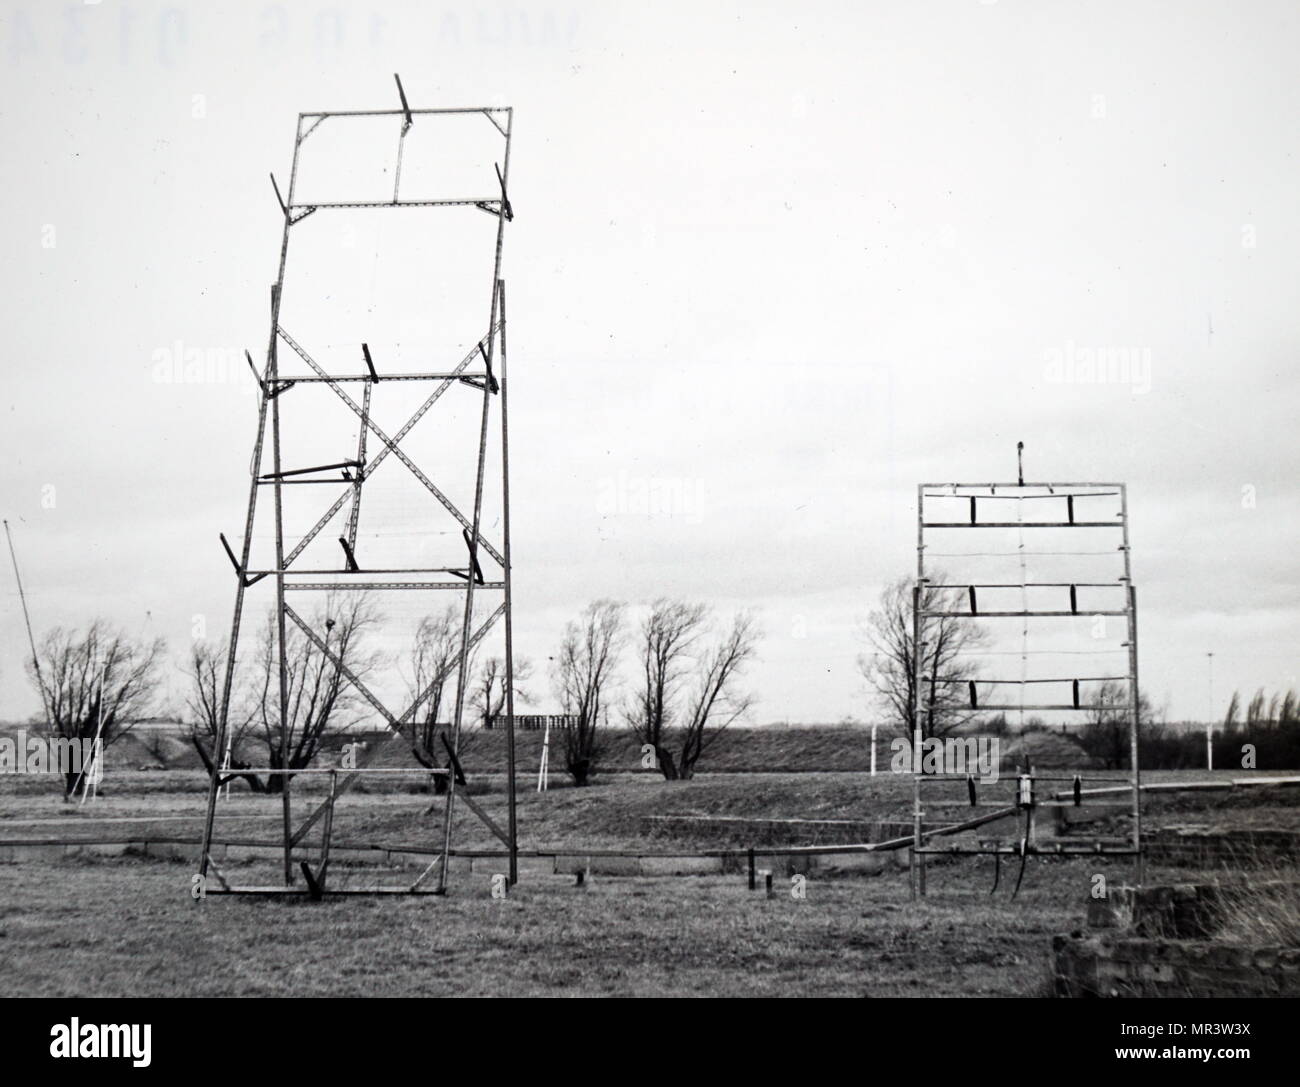 Foto von solar Antennen an der Mullard Radio Observatorium, Cambridge, England. Vom 20. Jahrhundert Stockfoto